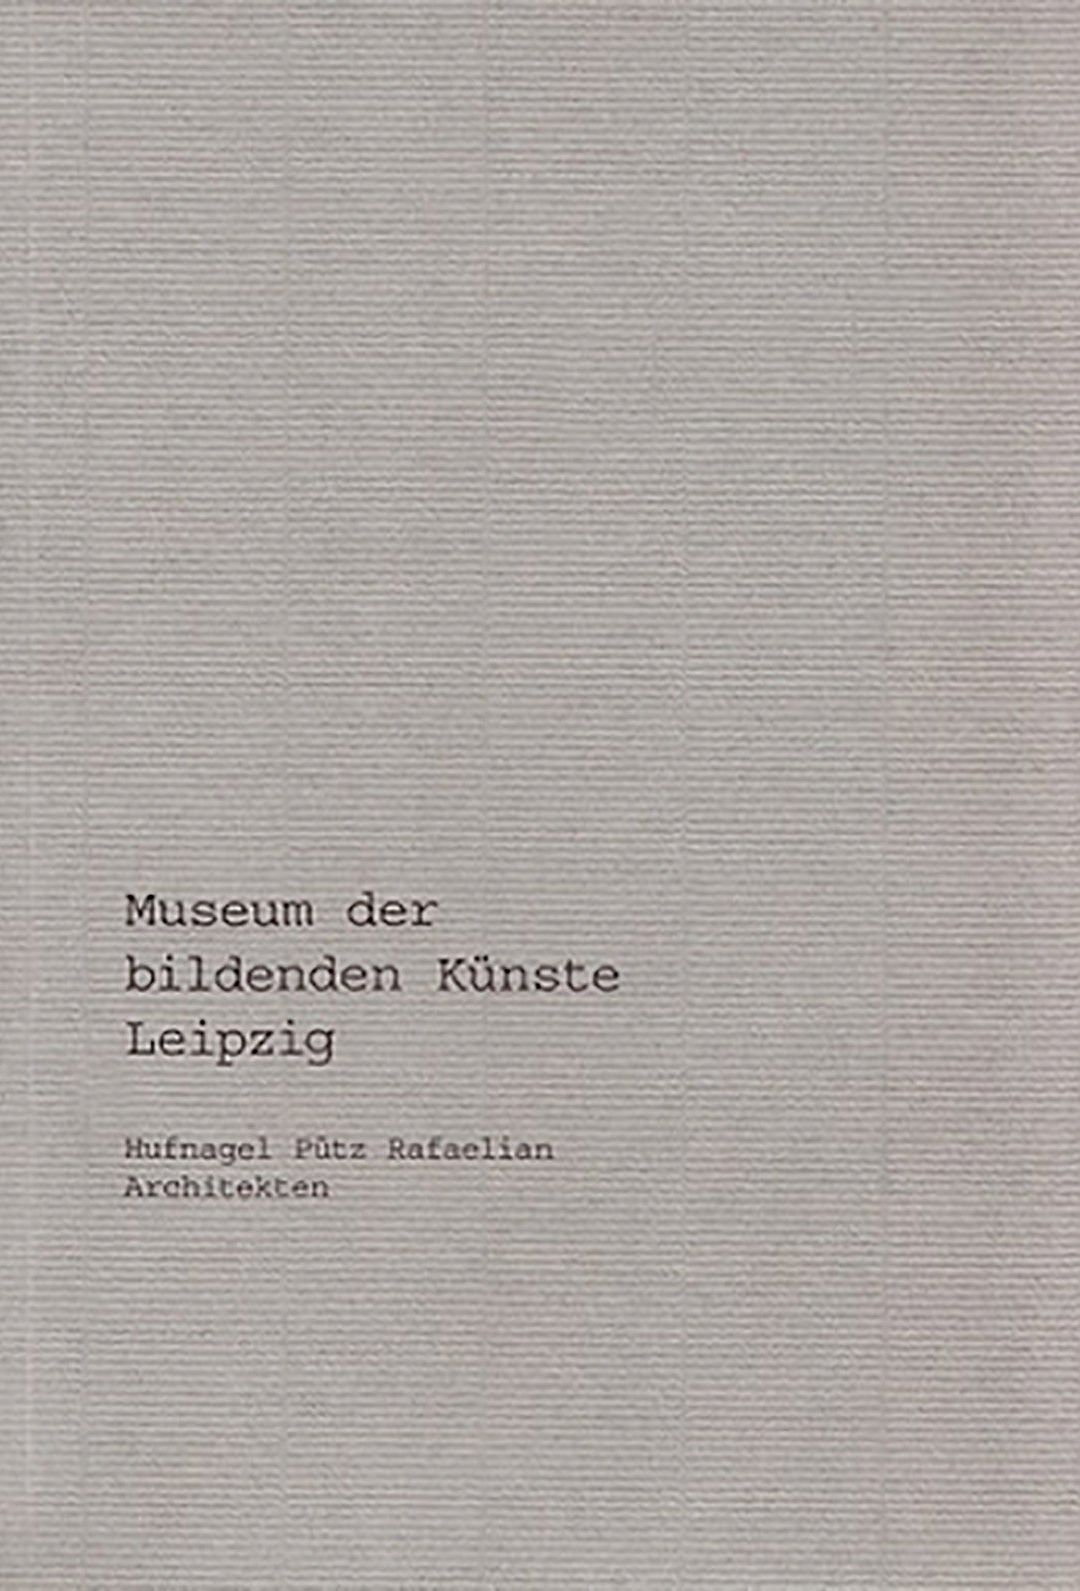 Museum der bildenden Künste 2004